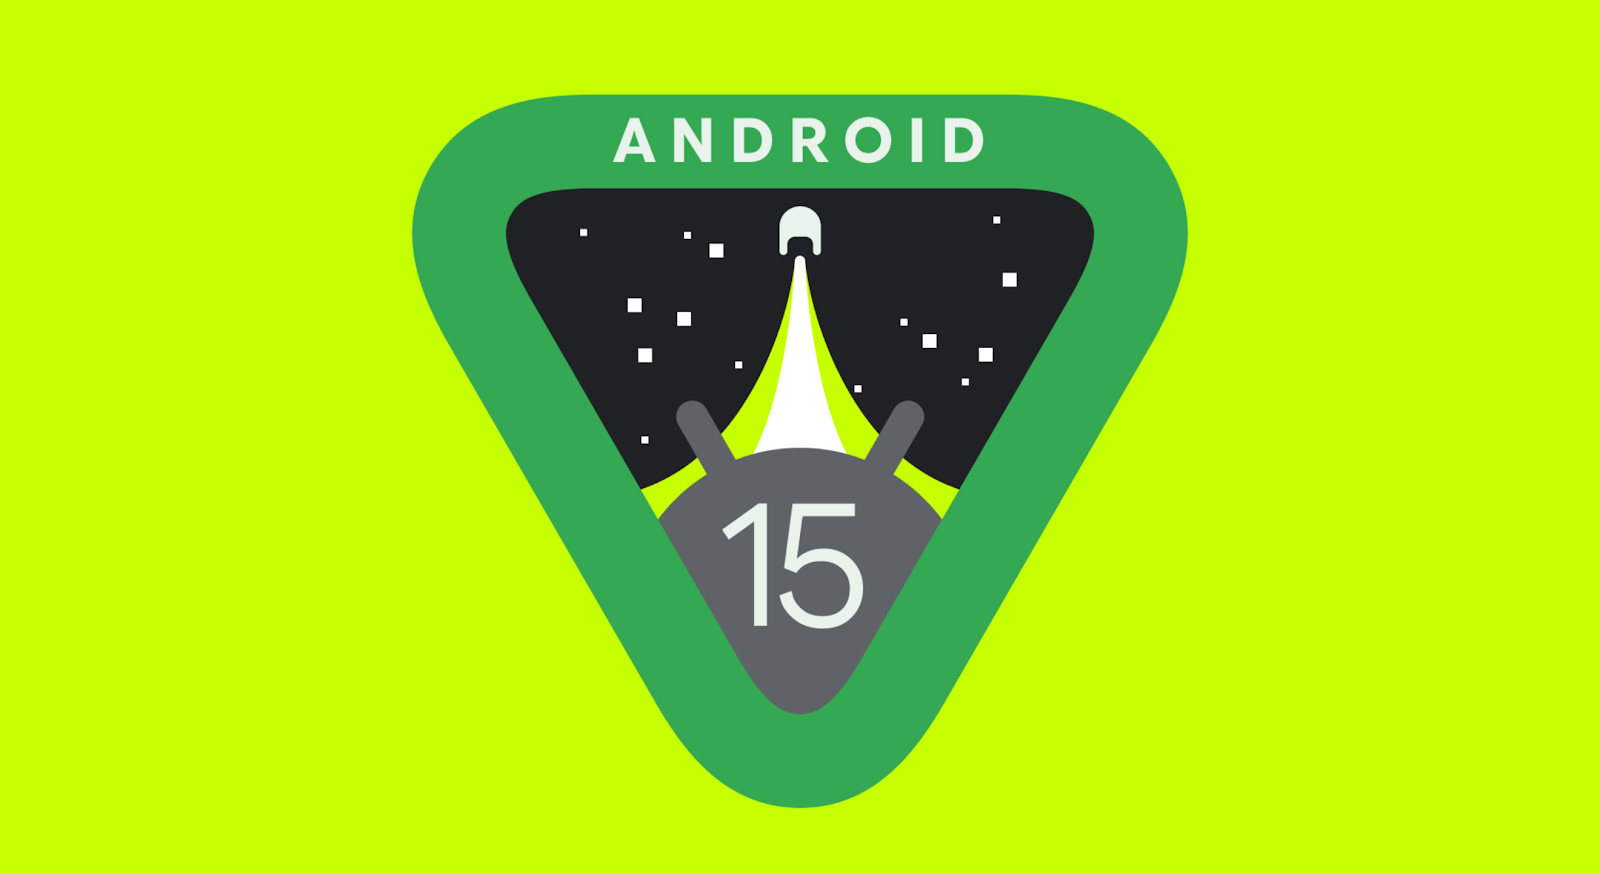 Google udostępniło pierwszą wersję deweloperską Androida 15